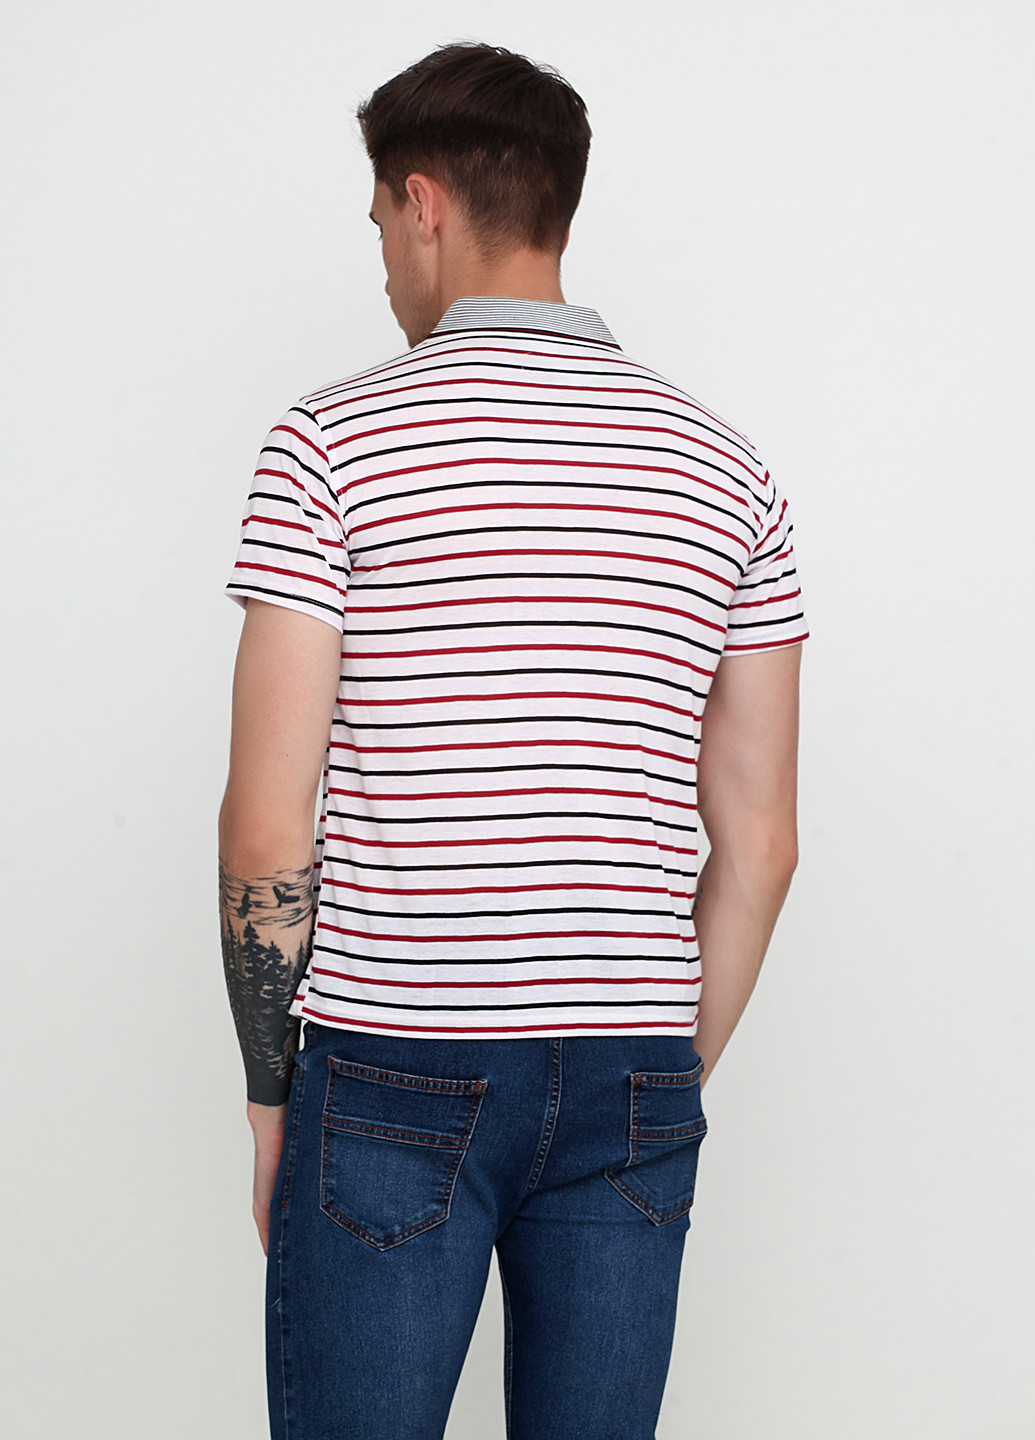 Бордовая футболка-поло для мужчин Mtns Fashion в полоску